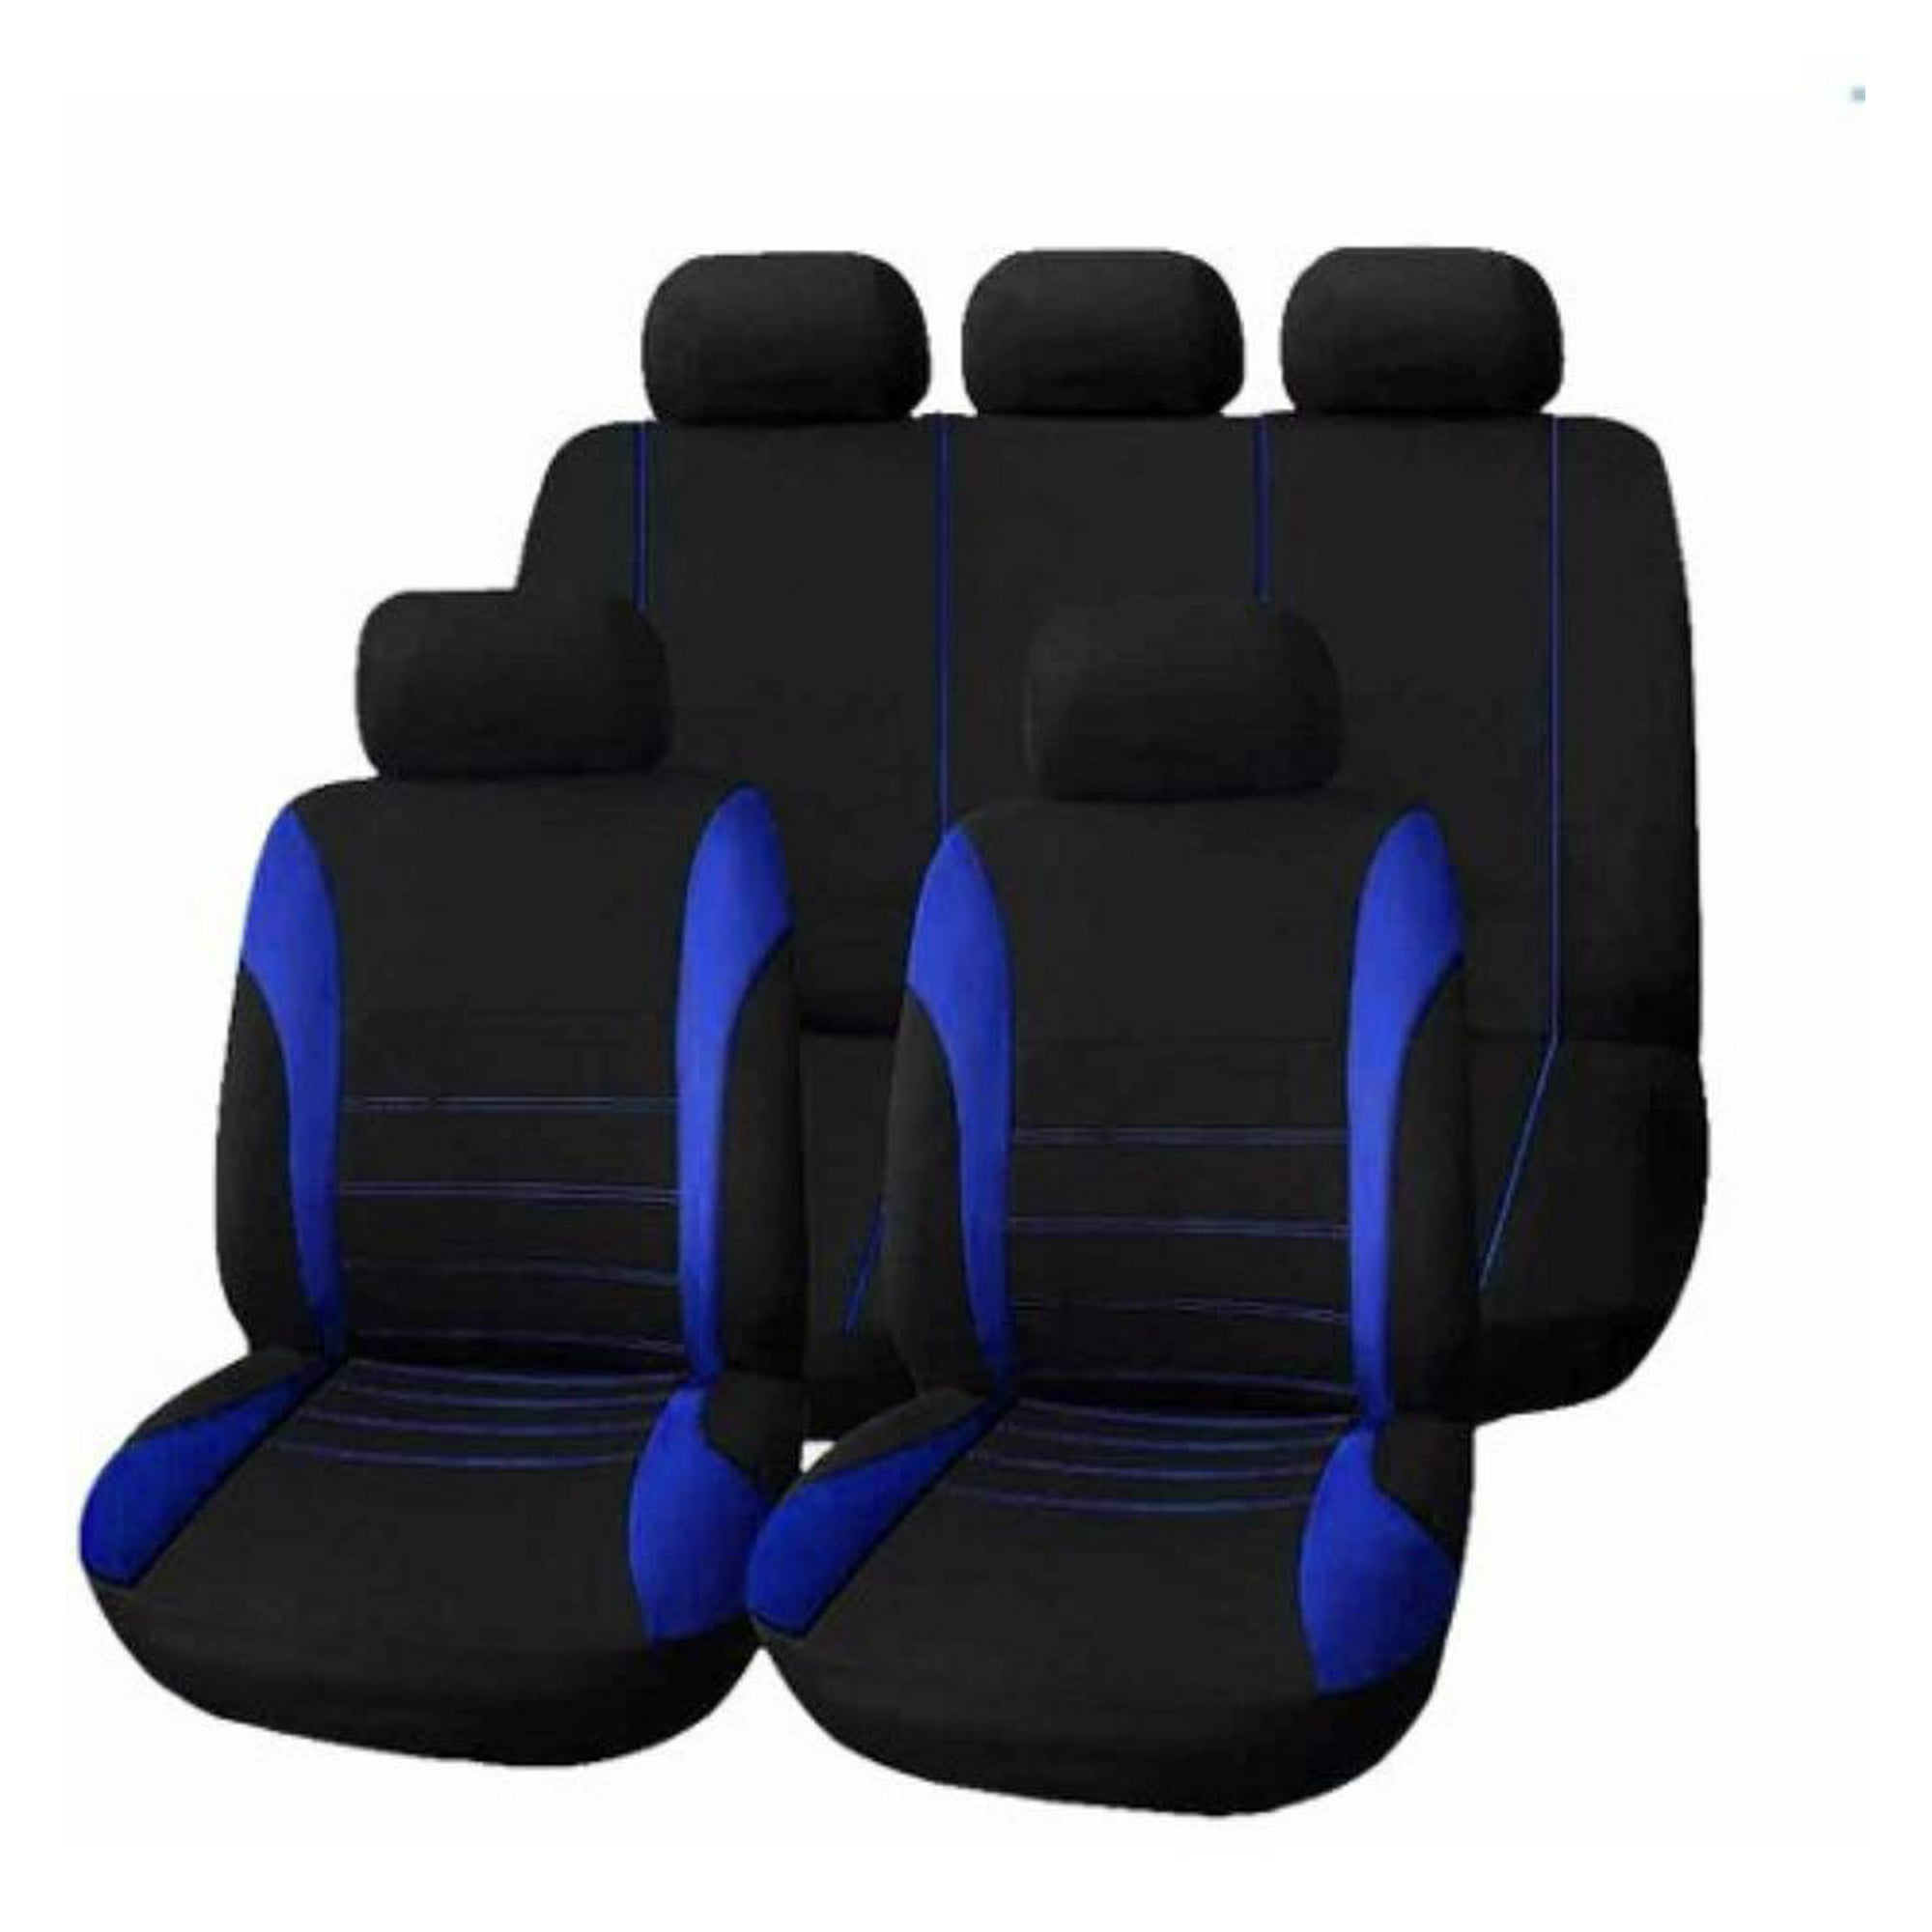 2 x Cubre Asientos Protector para coches Universal Negro Azul Cueros